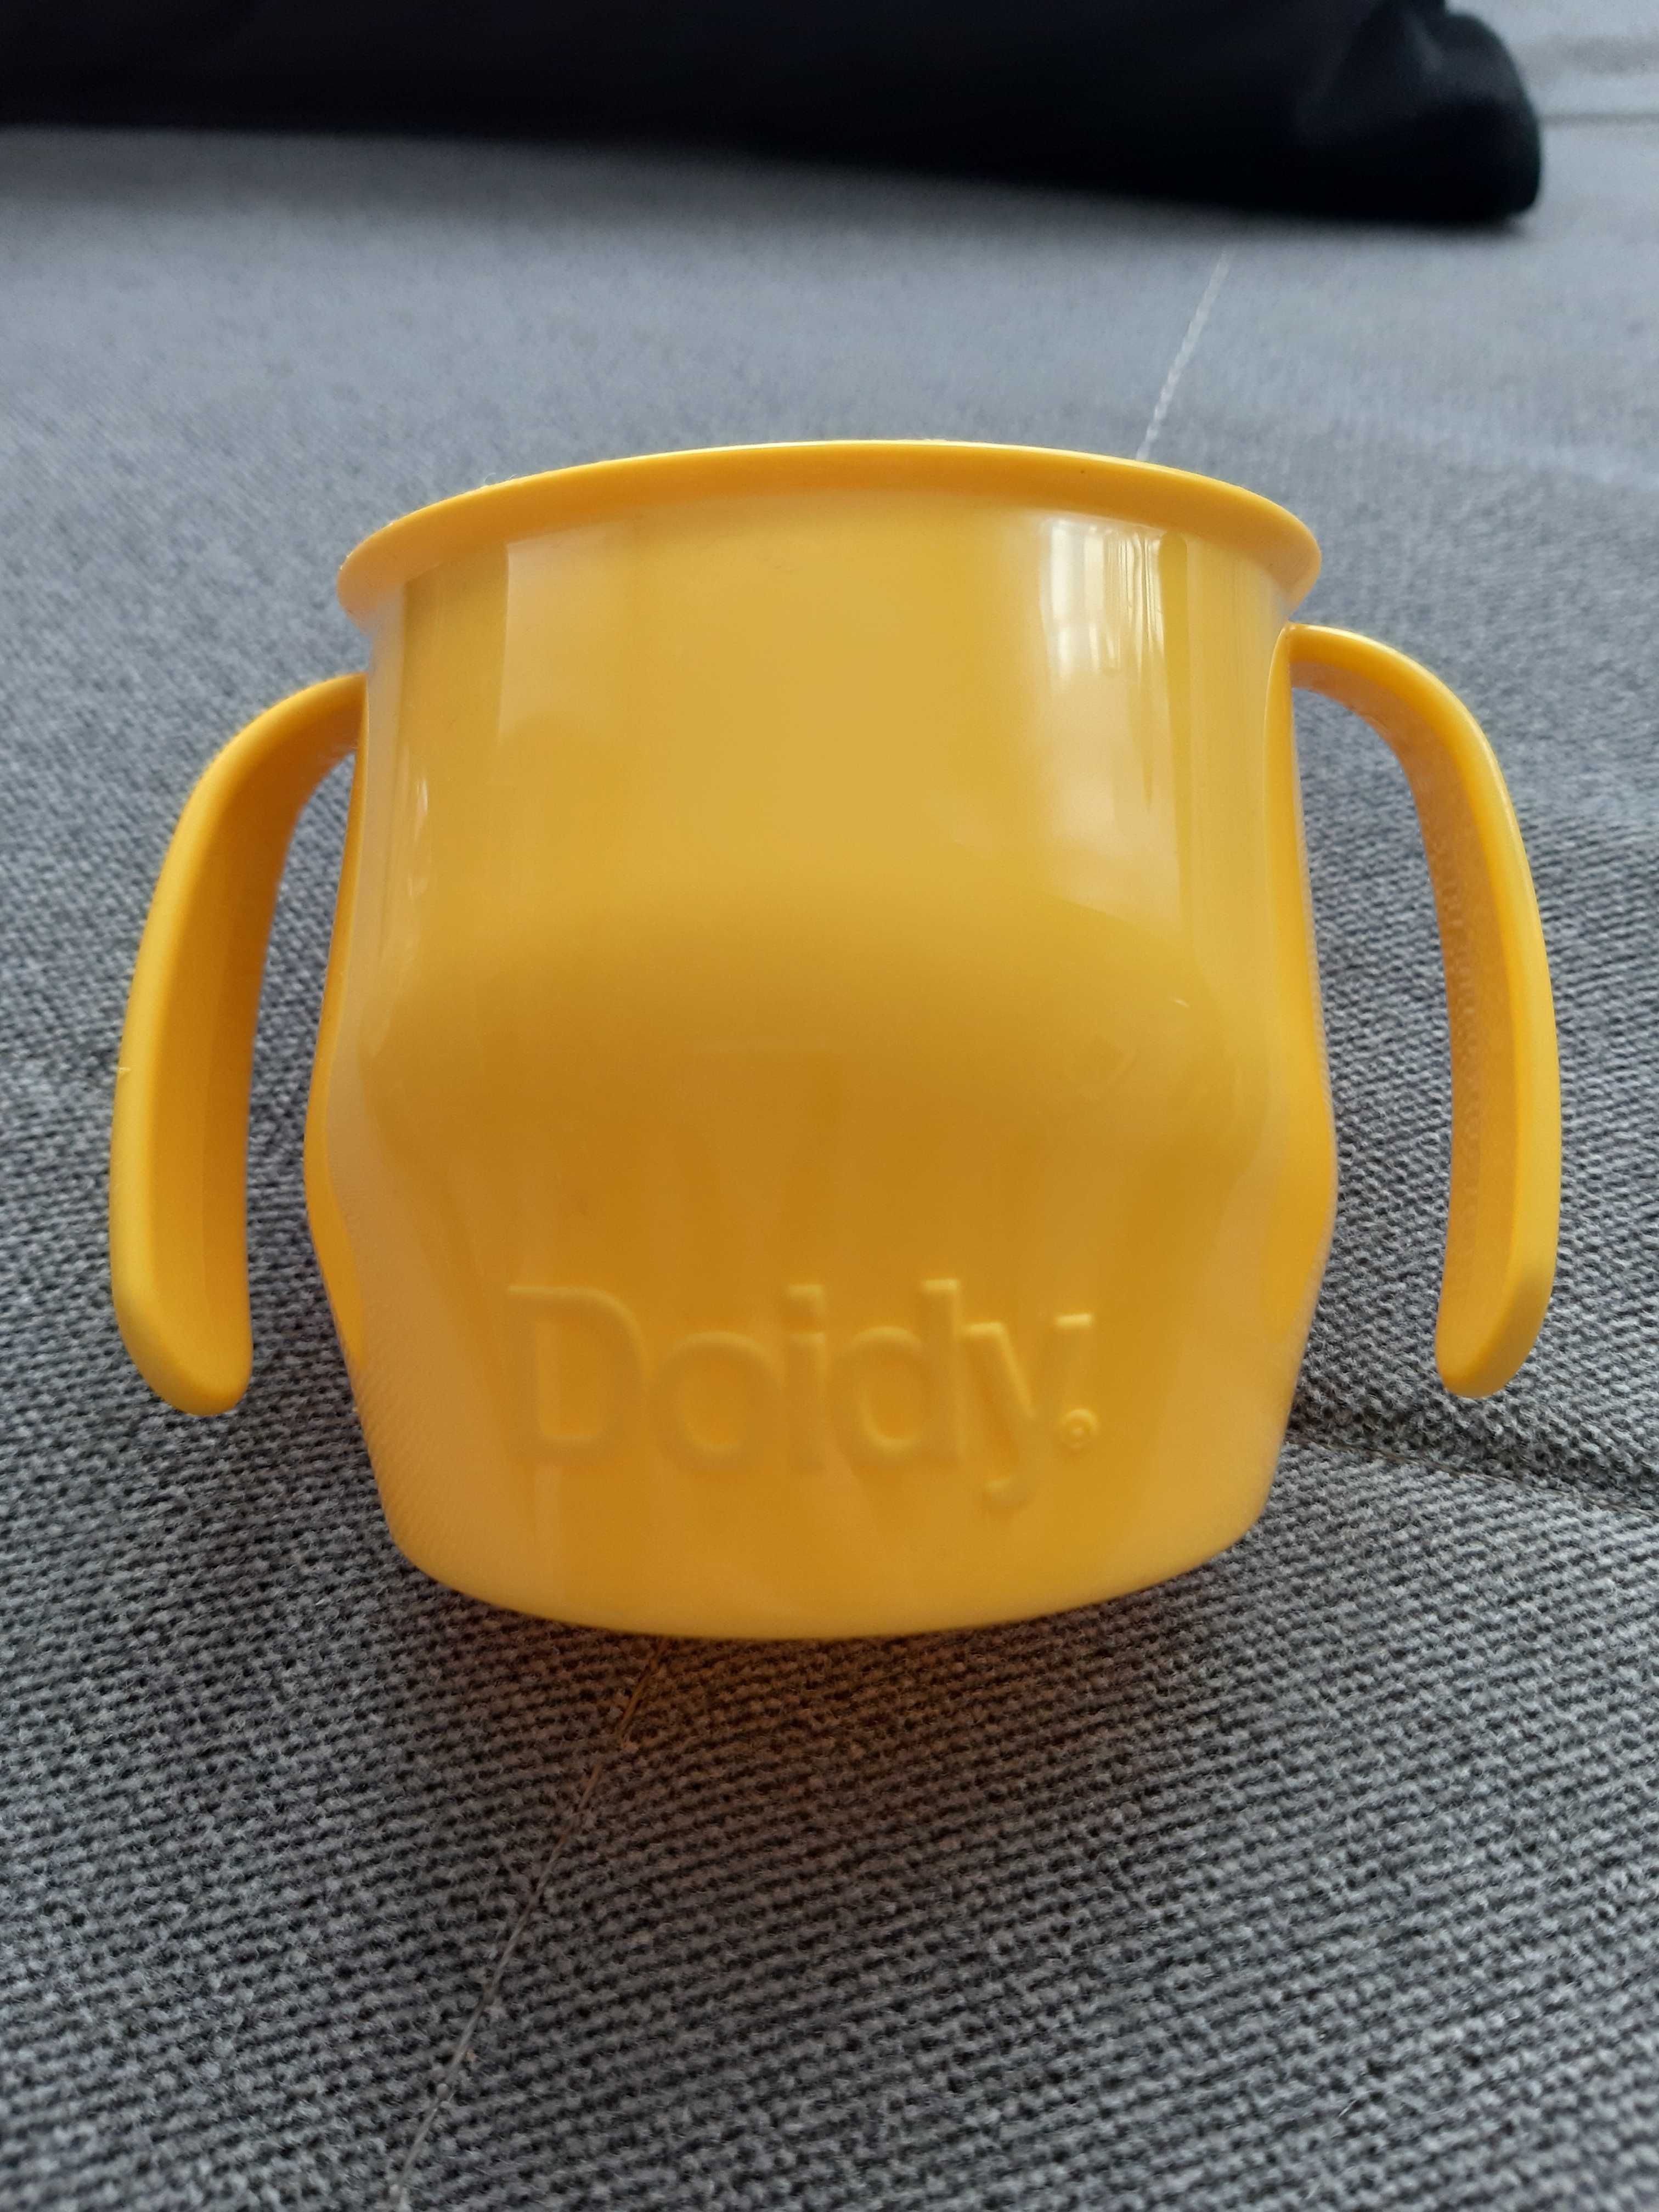 Doidy cup kubek dla dzieci żółty